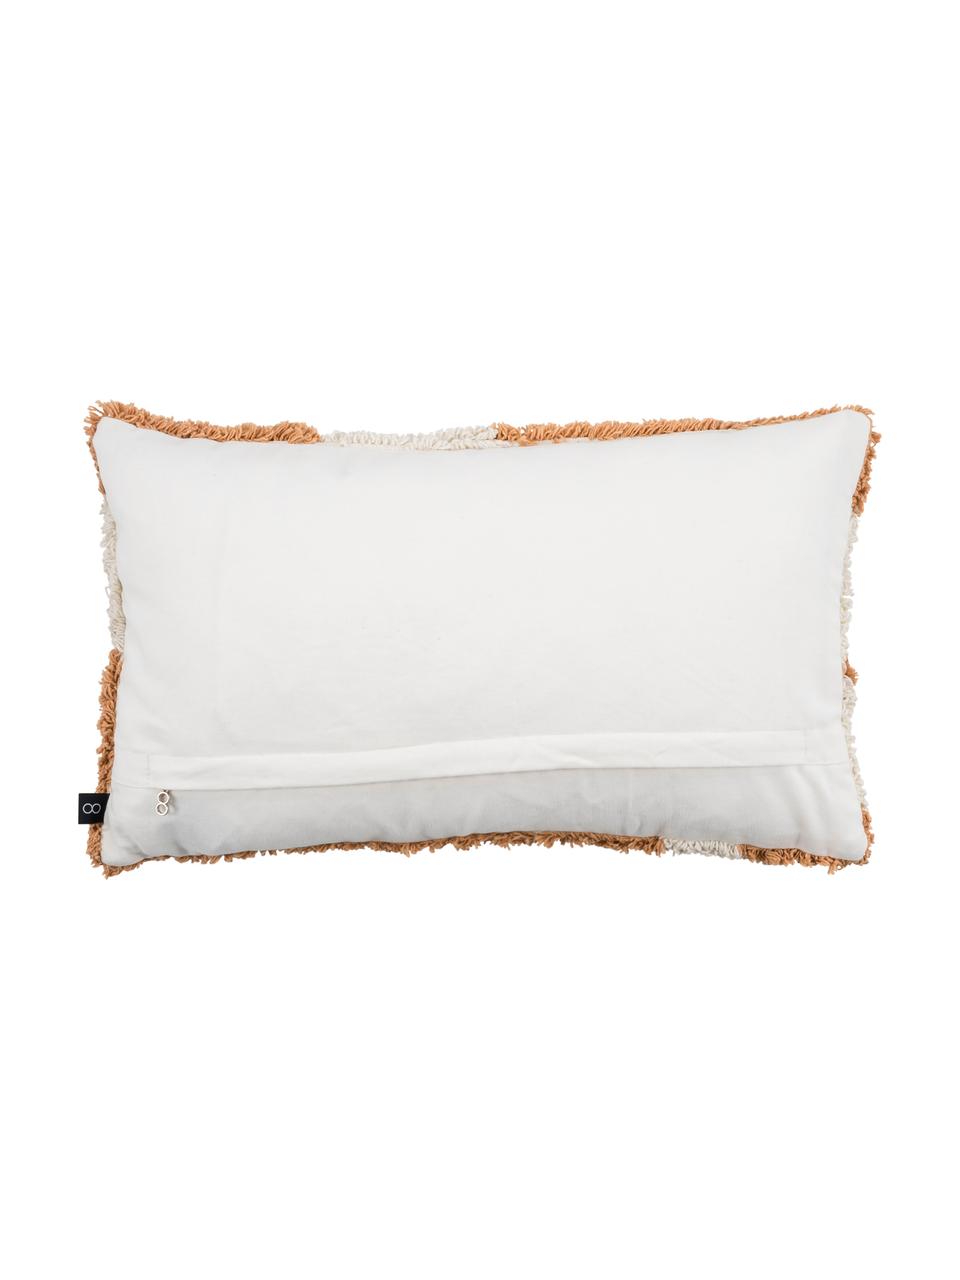 Flauschige Kissenhülle Power mit getufteter Oberfläche, 100% Baumwolle, Orange, gebrochenes Weiß, 30 x 50 cm